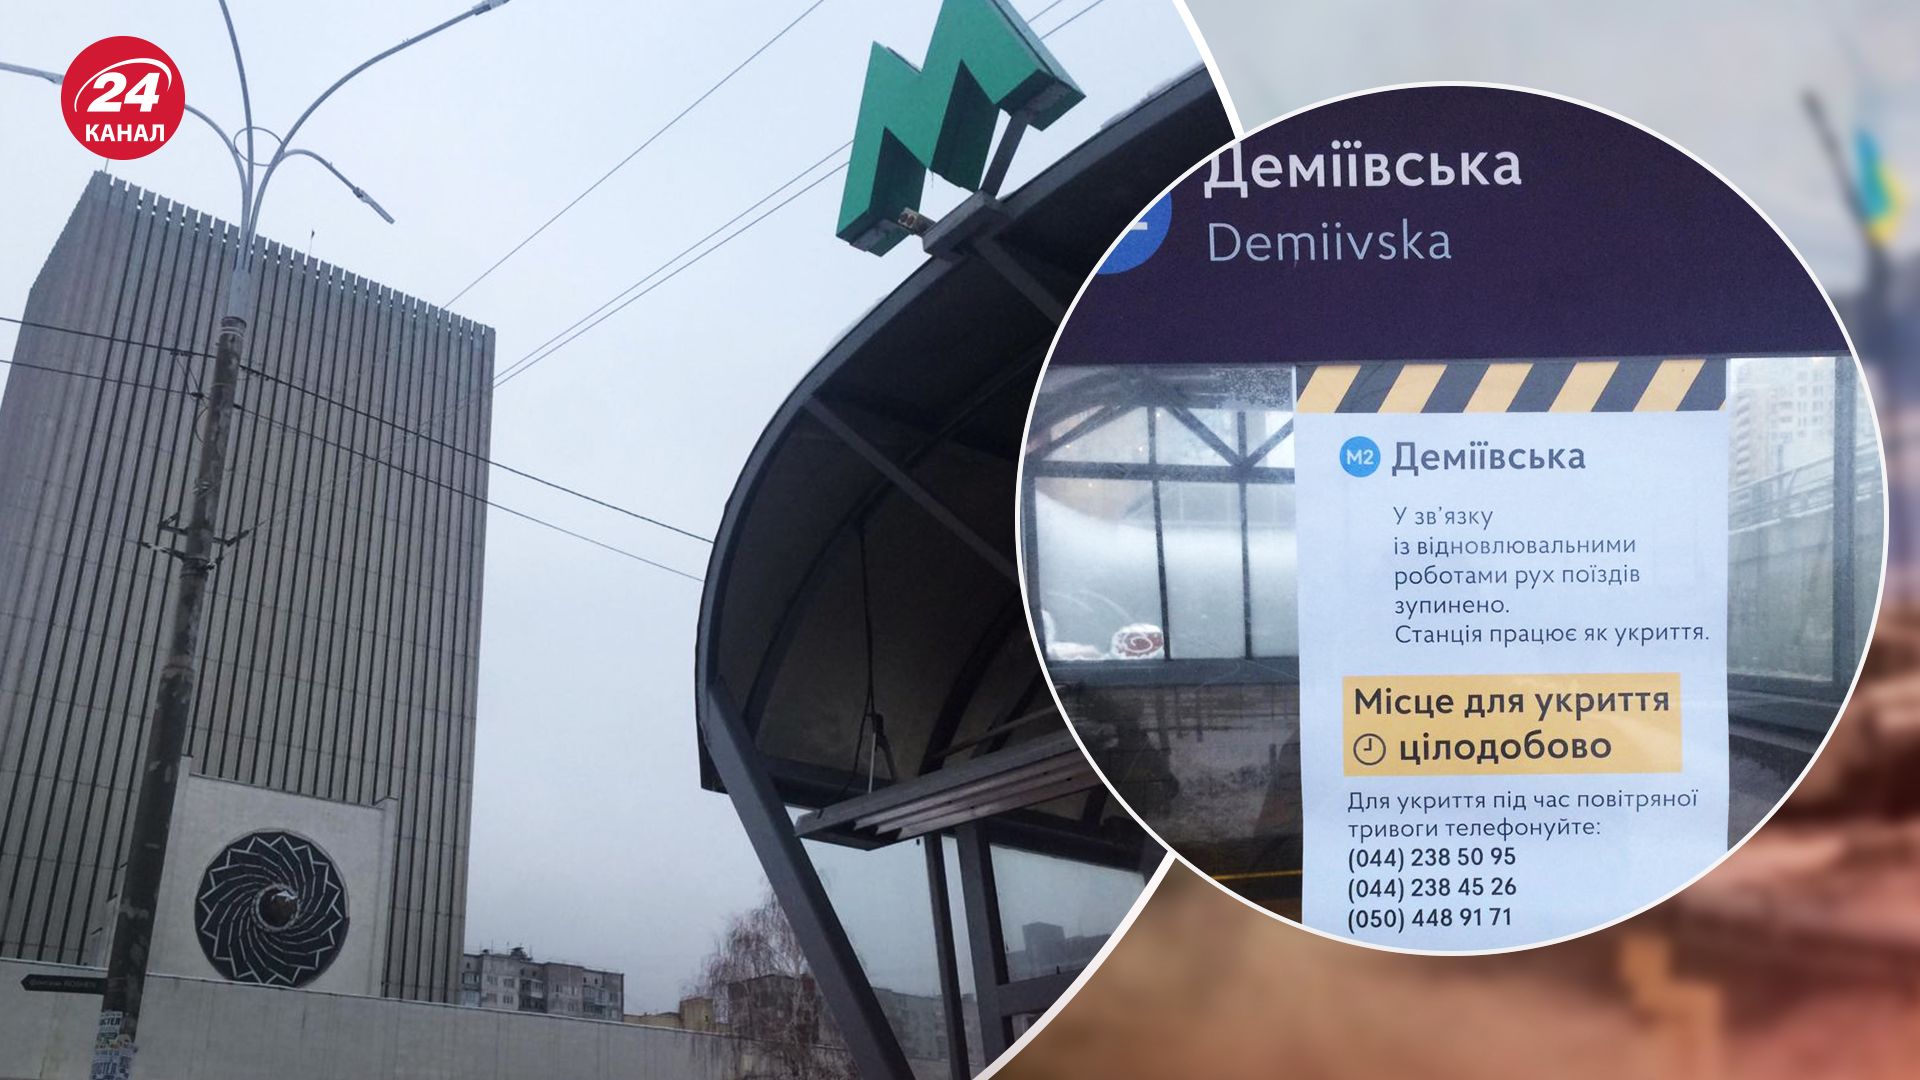 Проблемы в метро Киева начались не в декабре, а раньше